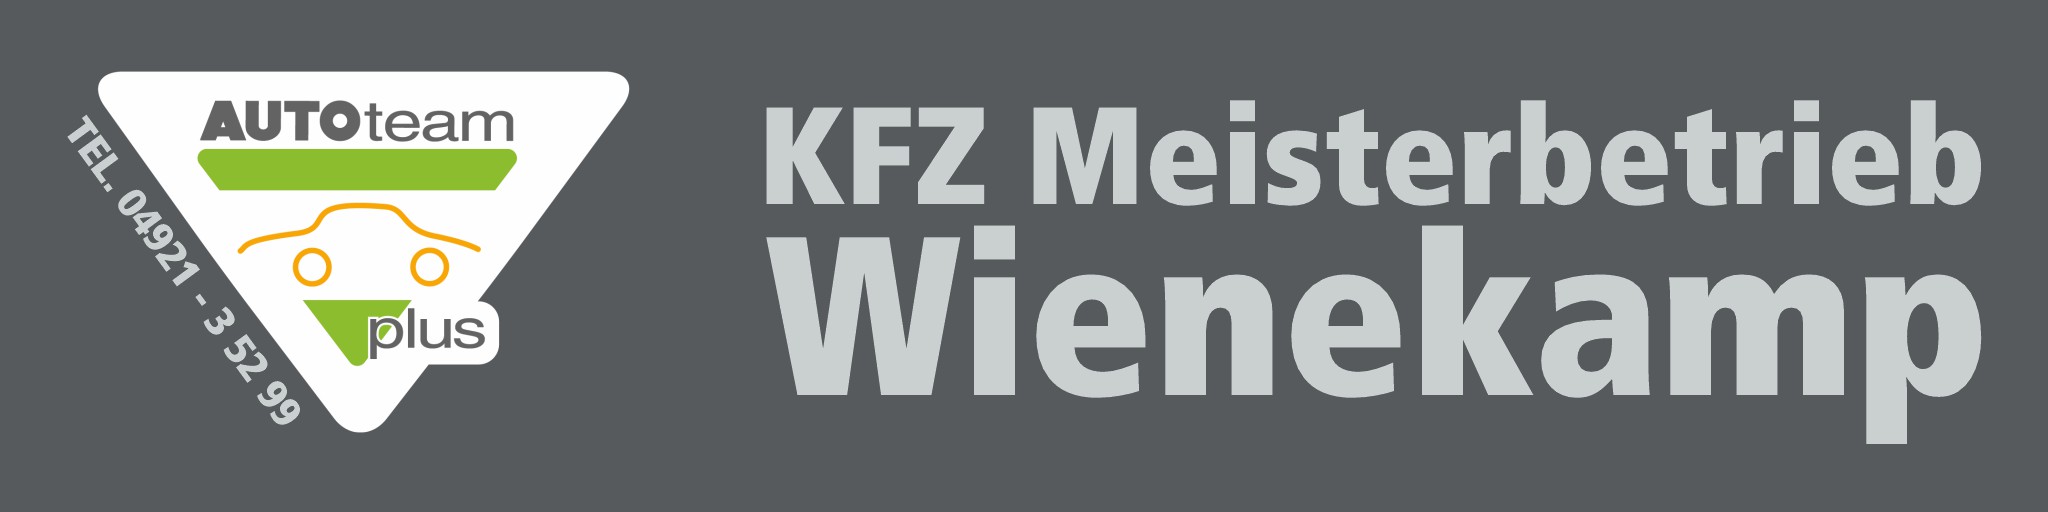 KFZ Meisterbetrieb Wienekamp